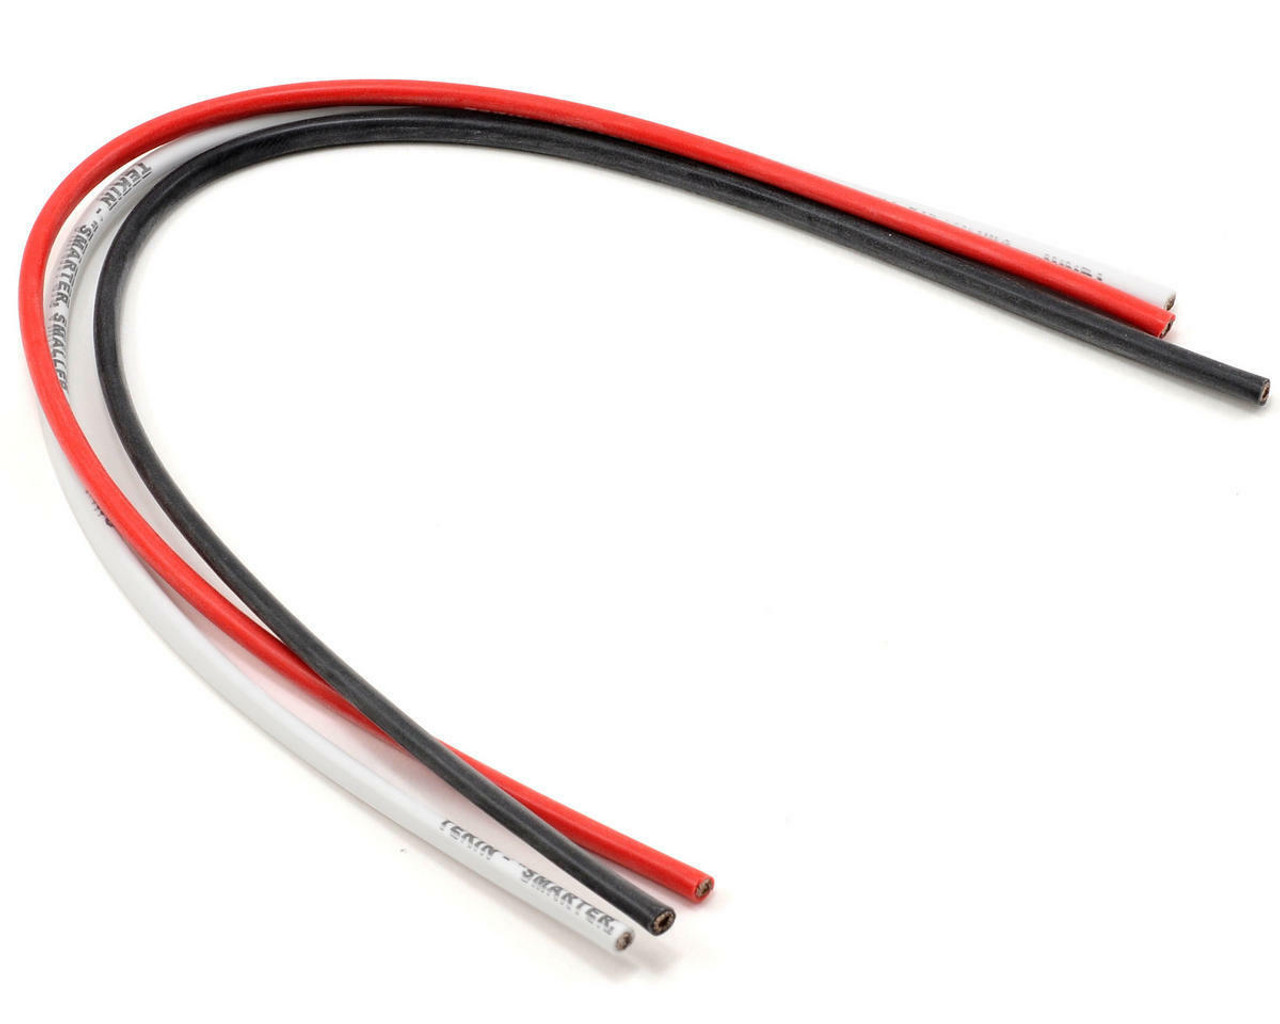 Tekin 3011 12awg Silicon Power Wire (Red/Black/White) (12')